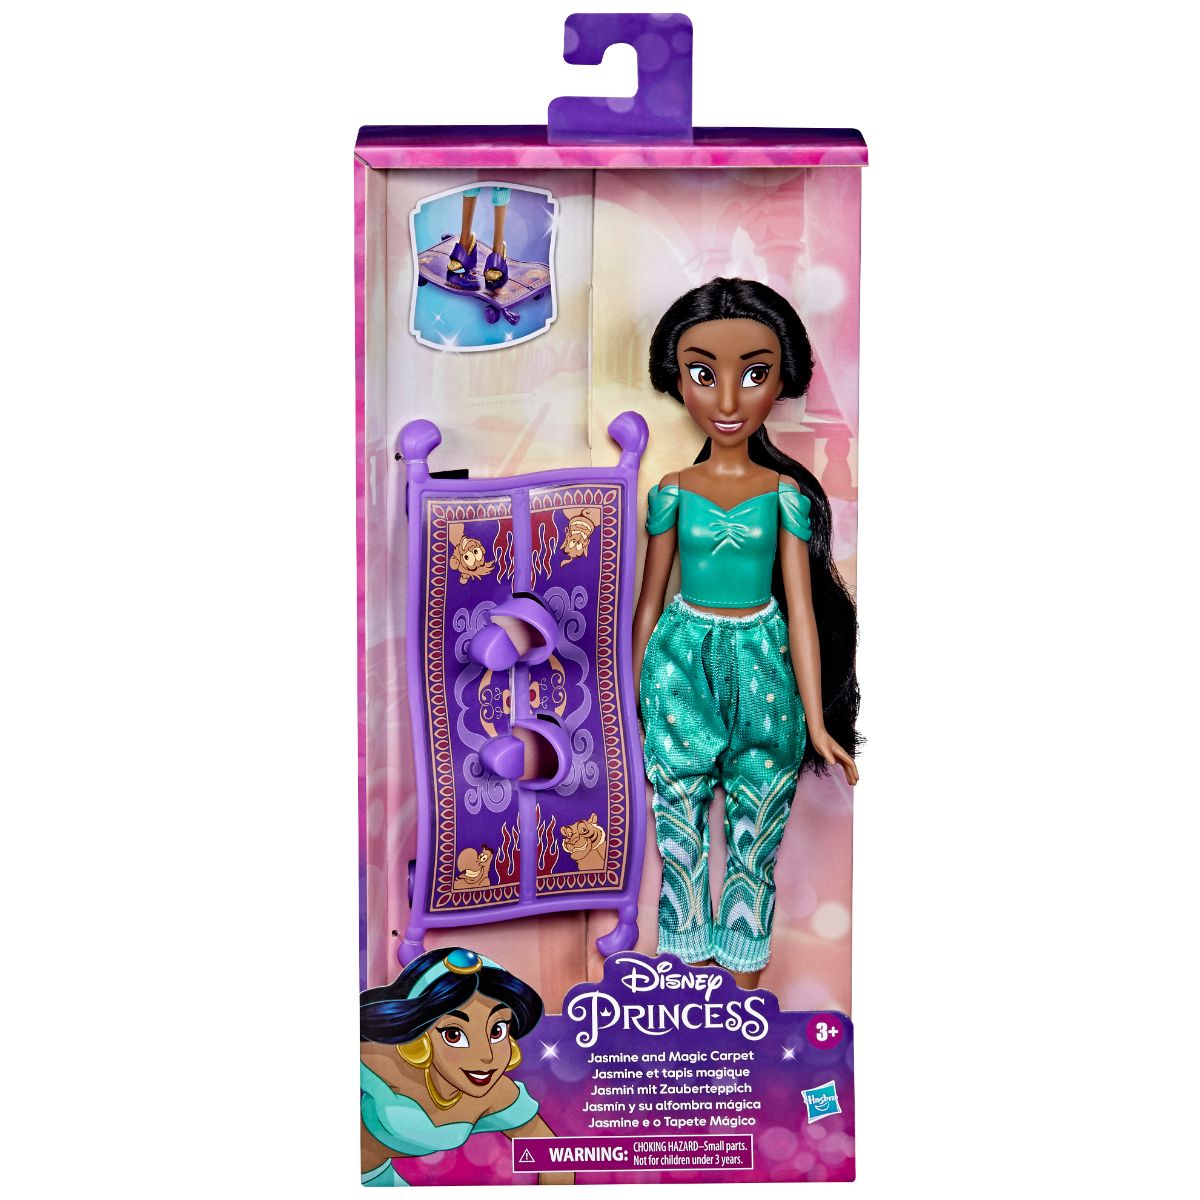 Papusa Everyday Adventures Disney Princess, Jasmine and magic carpet, F3388EU40 Disney Princess imagine noua